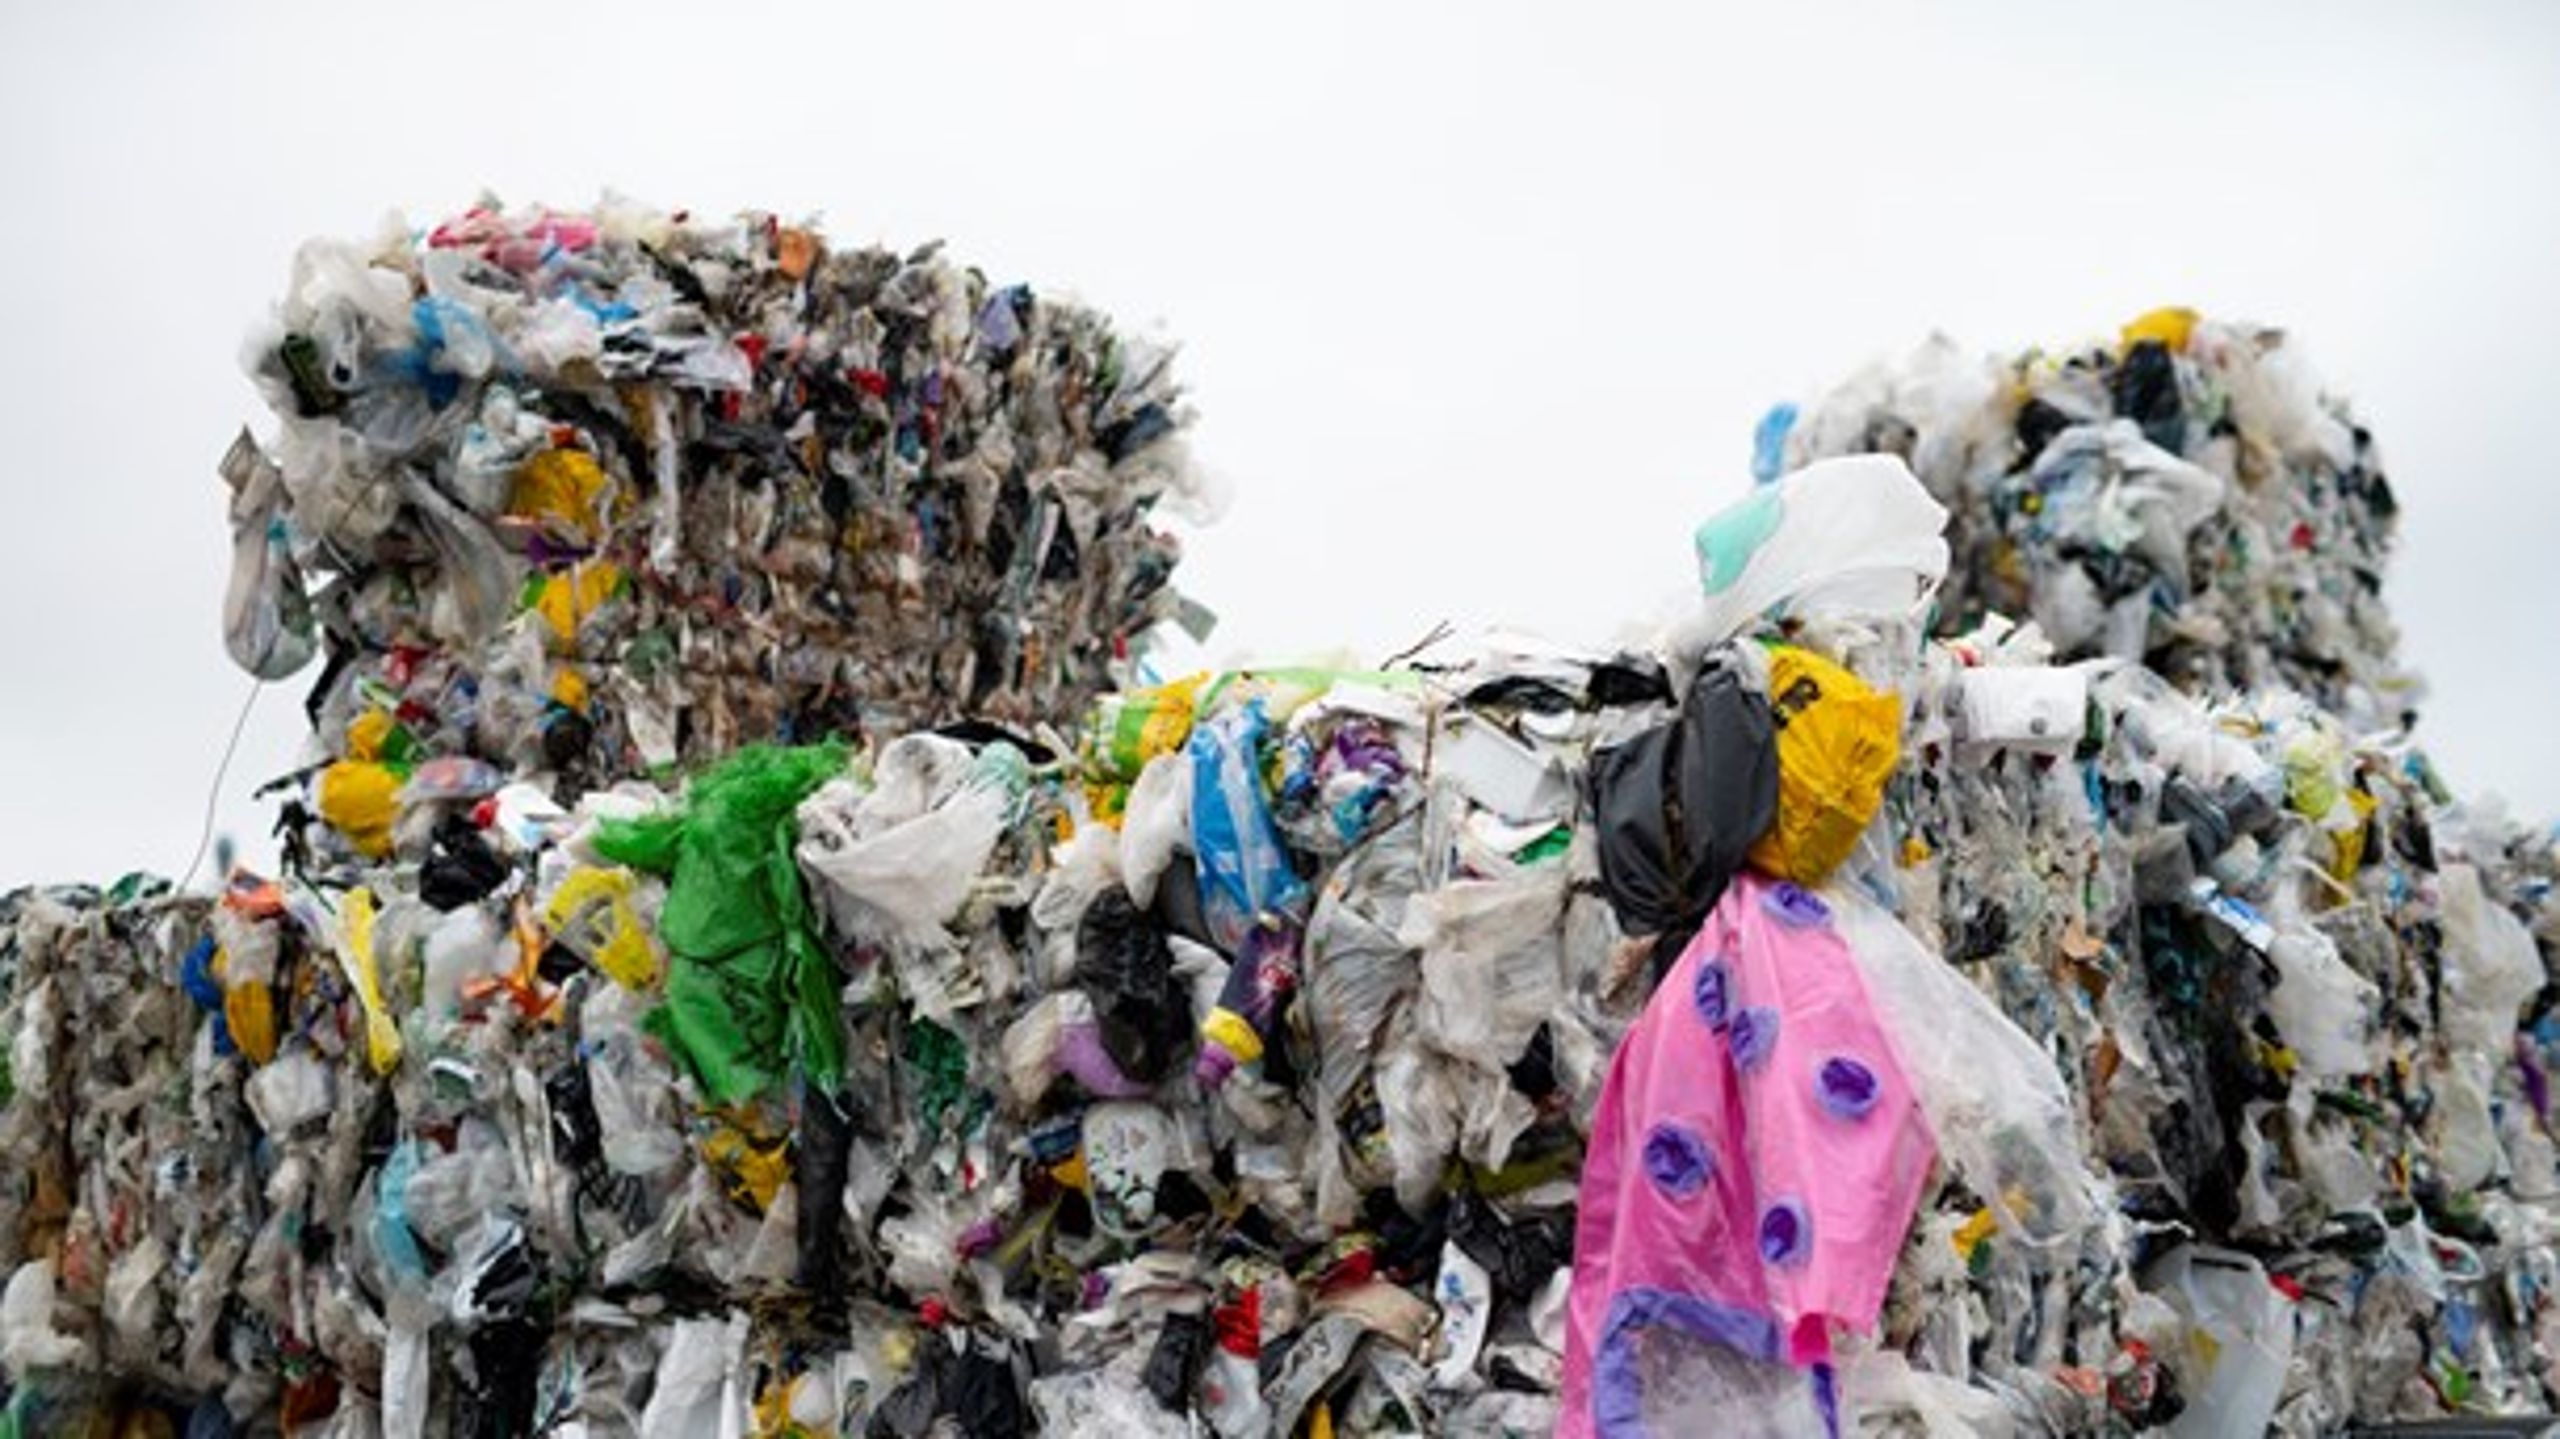 Konkurrence og marked går ikke per automatik miljøets ærinde, når vi taler affald, skriver Charlotte Fischer.